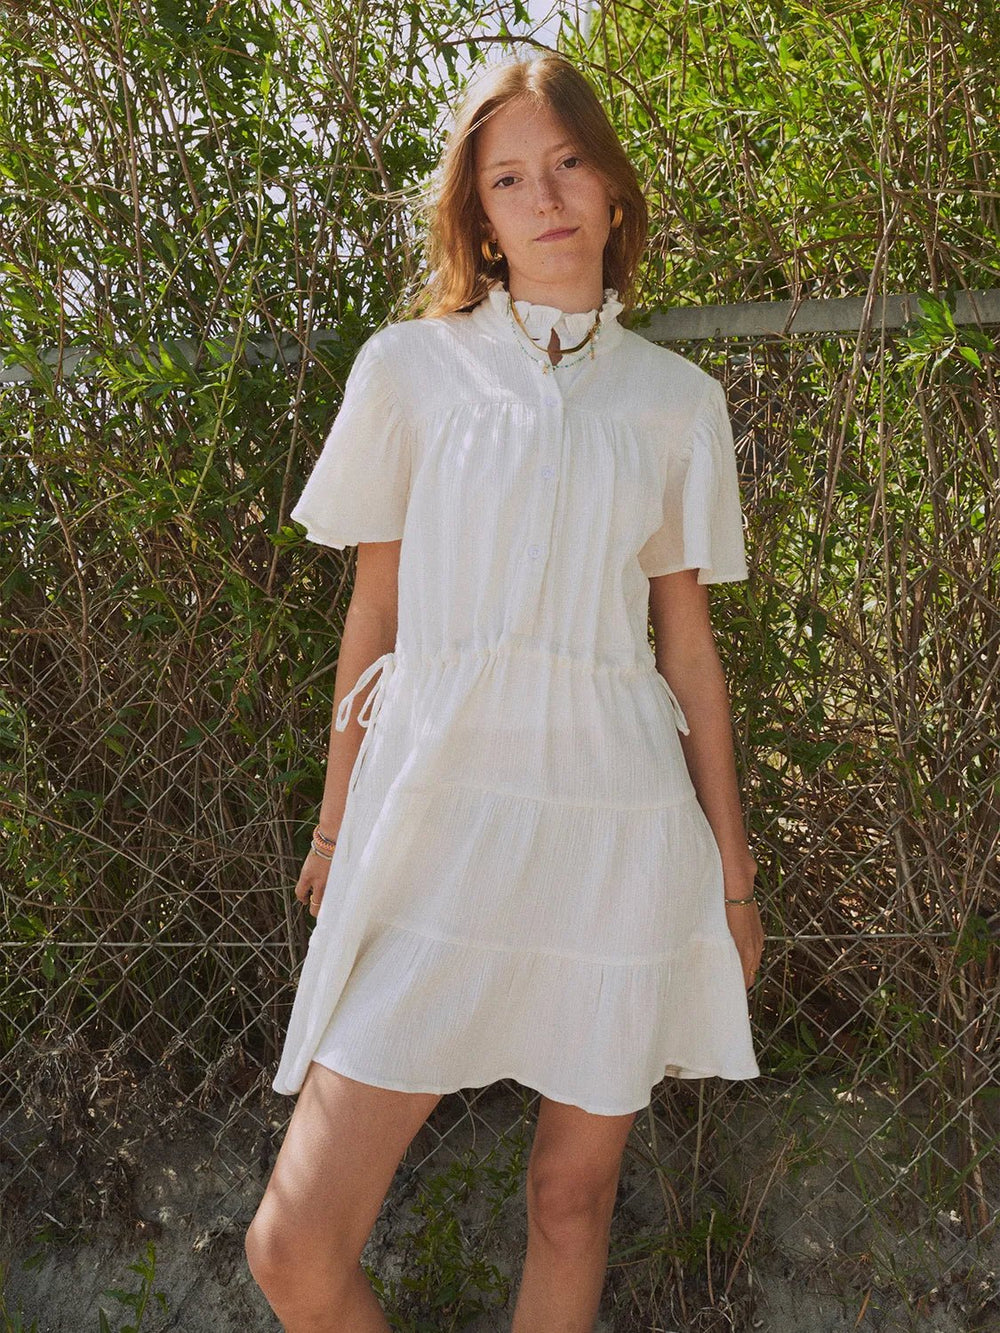 G Lucy Layer Dress - 001 Cream - Posh New York